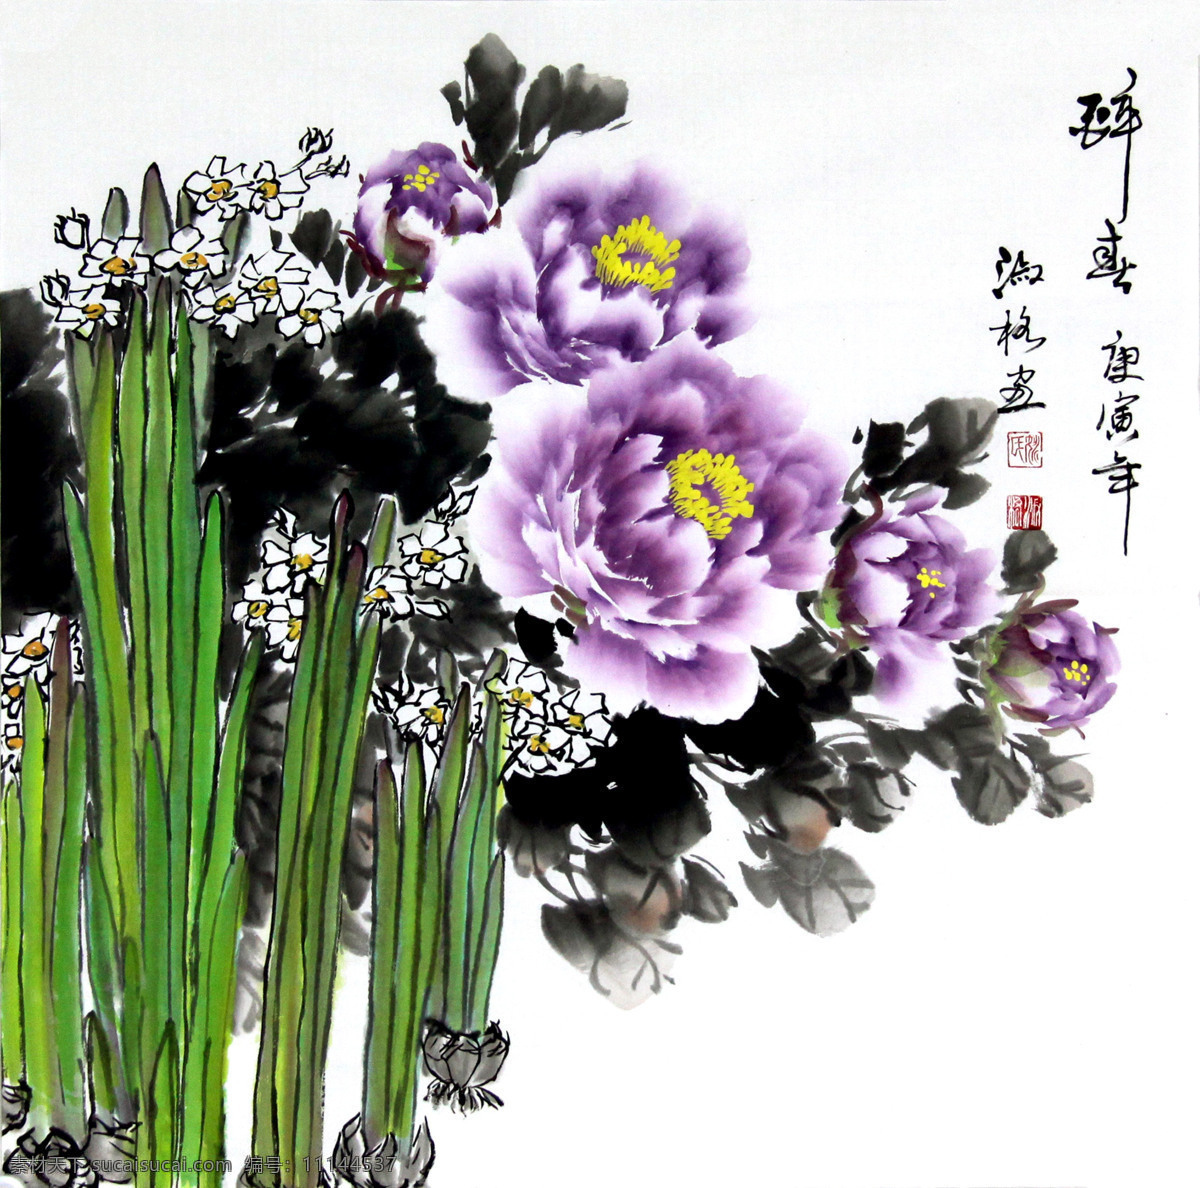 醉春 美术 中国画 花卉画 花木 花朵 牡丹花 水仙花 国画艺术 国画集83 绘画书法 文化艺术